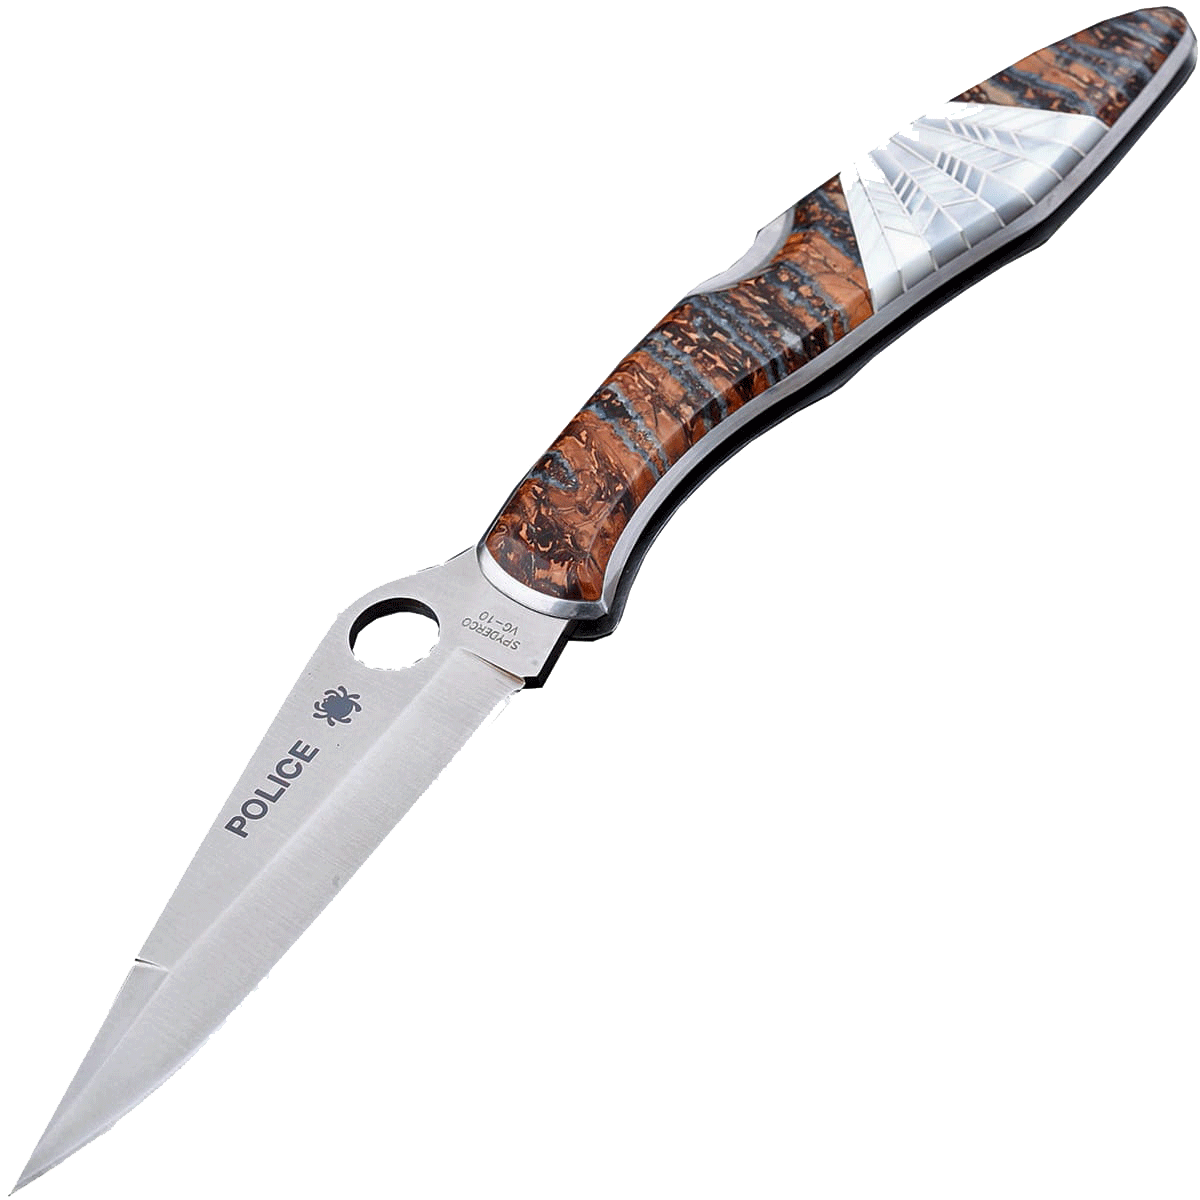 Складной нож Santa Fe Spyderco Police, сталь VG-10, рукоять сталь с накладкой из зуба мамонта/перламутра - фото 1